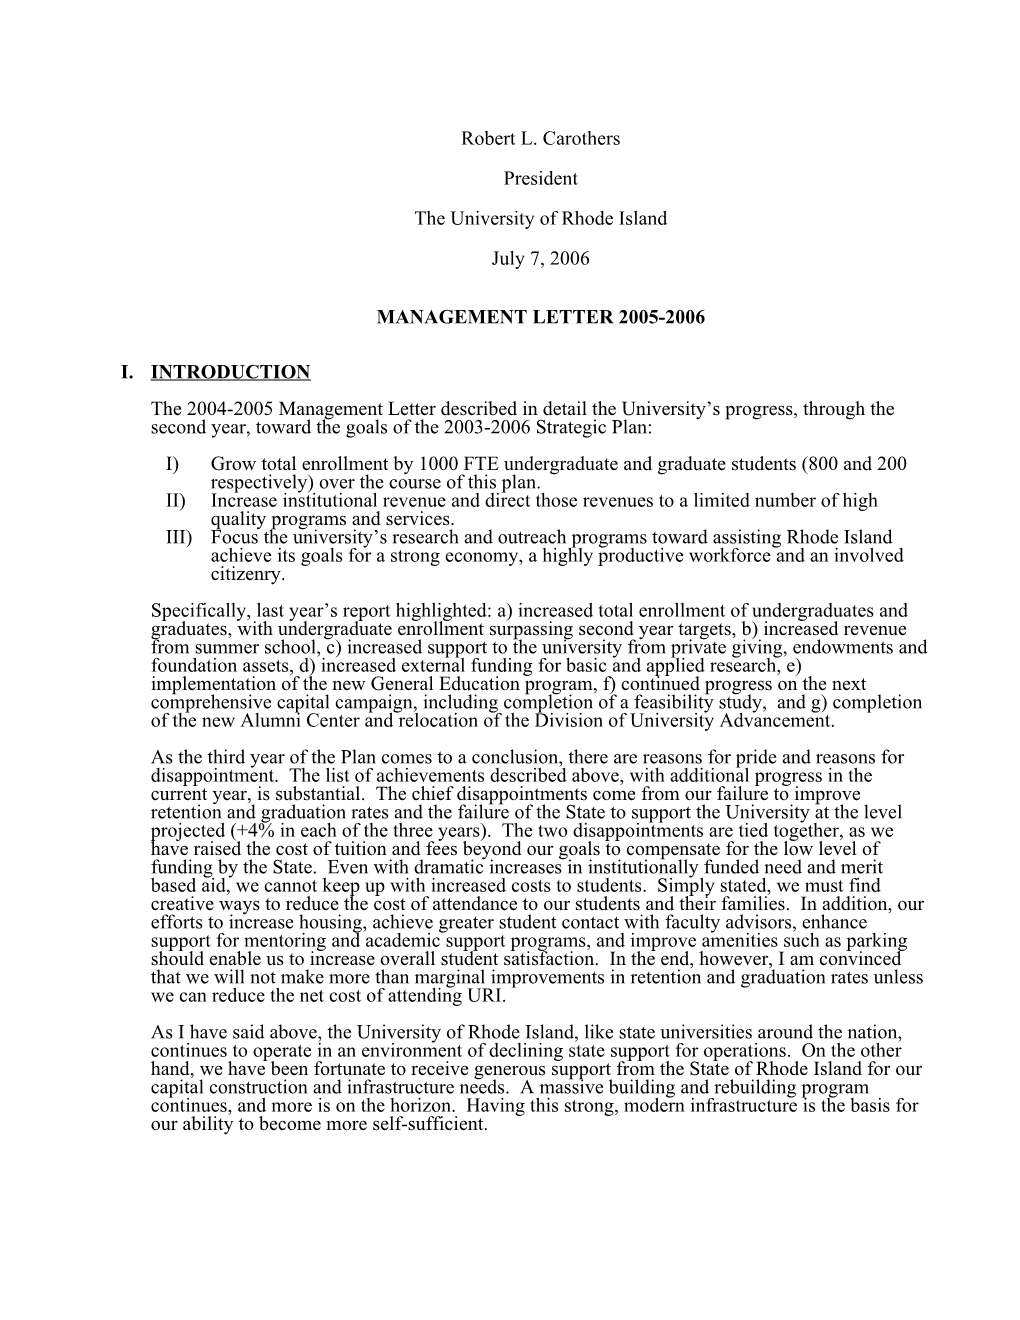 Management Letter 2002-2003 Format